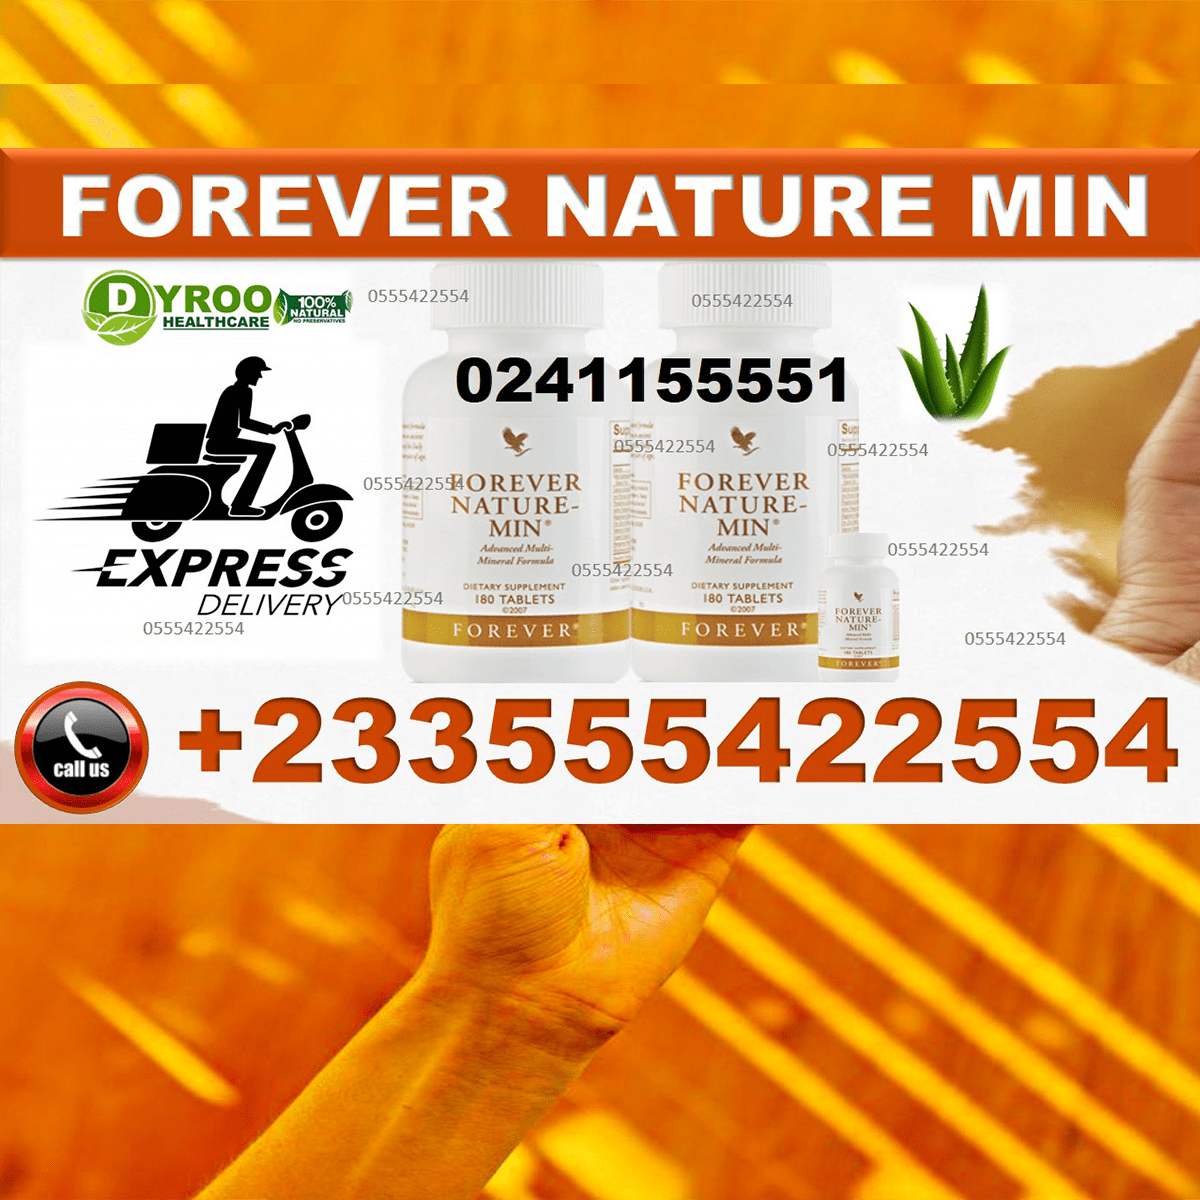 Forever Nature Min in Ghana